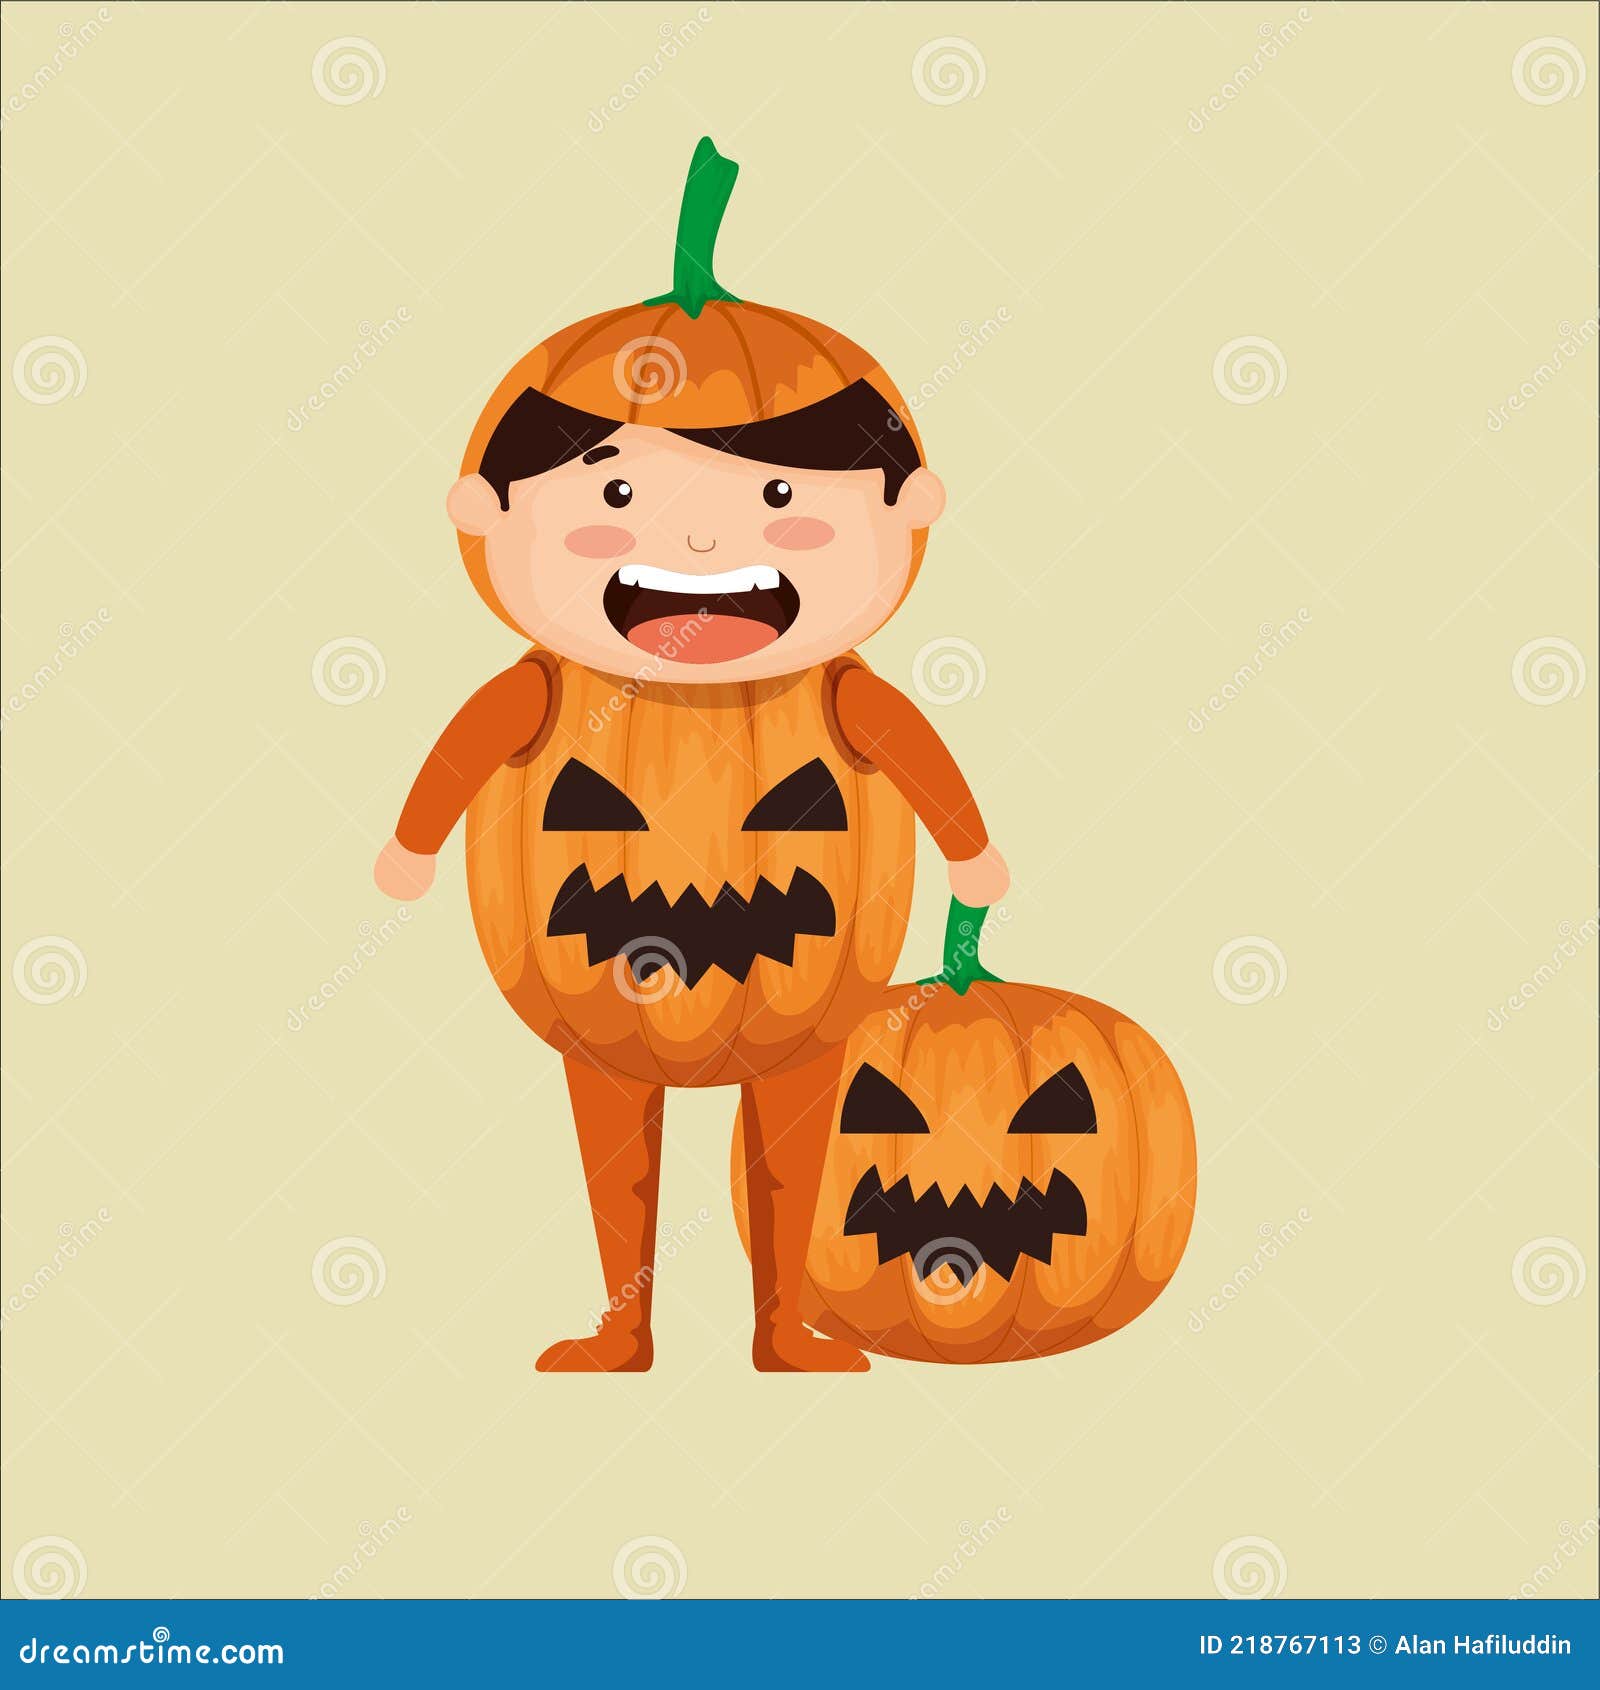 Halloween with Costum Children Vector Stock Vector - Illustration of ...